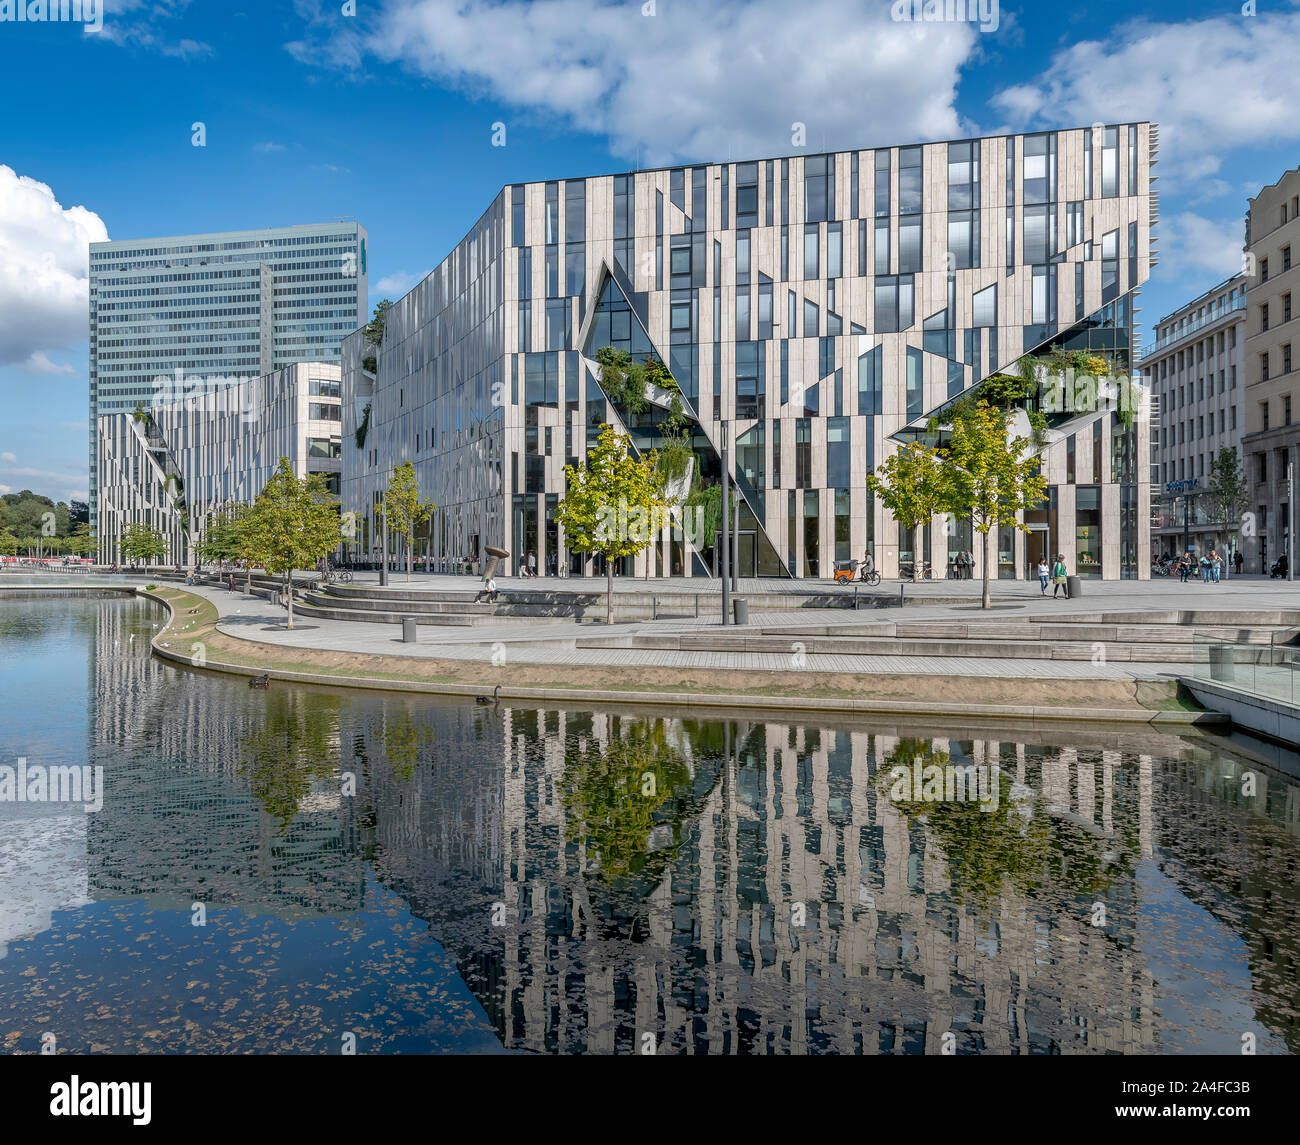 Kö-Bogen centre commercial et grand magasin Breuninger à Düsseldorf, Allemagne. Conçu par l'architecte Daniel Libeskind, ouverture en 2014. Banque D'Images